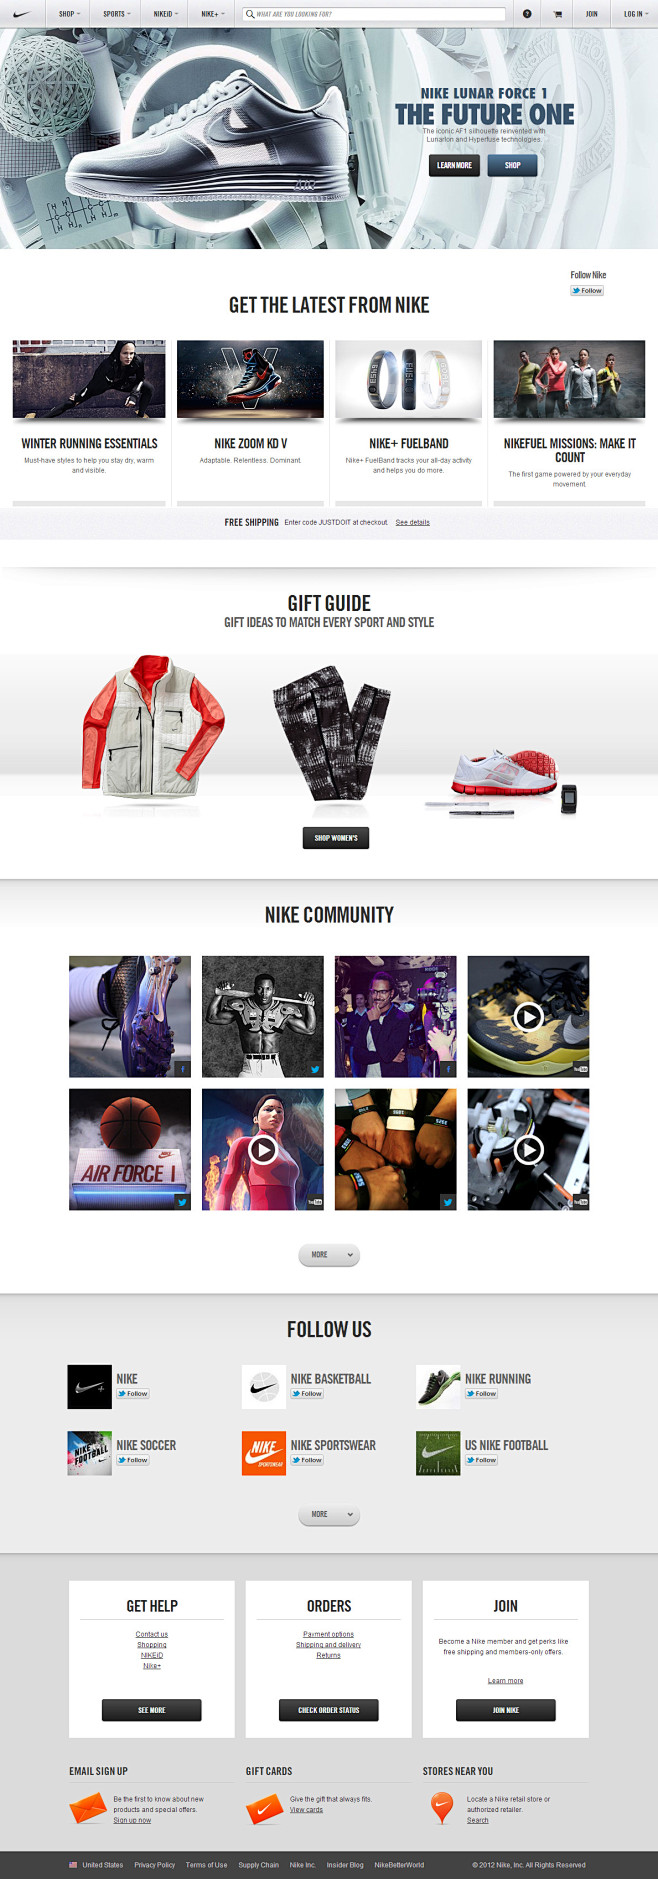 Nike（耐克）品牌官方网站 #采集大赛...